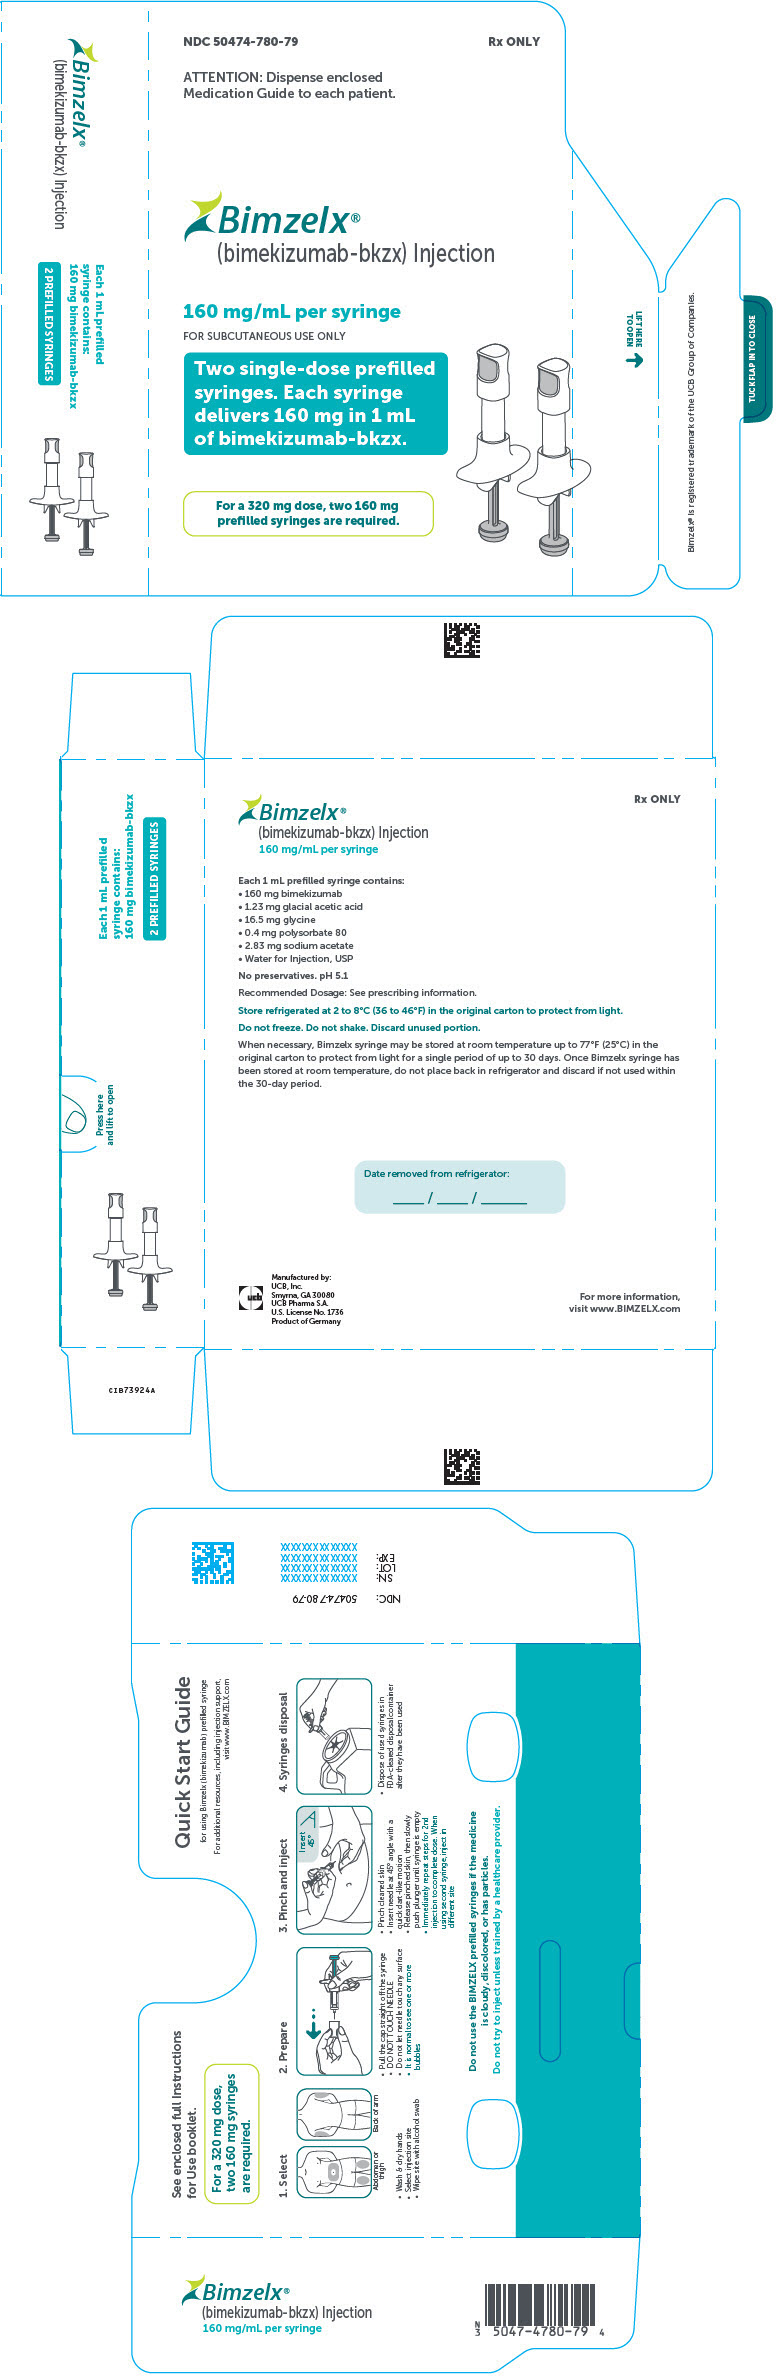 PRINCIPAL DISPLAY PANEL - 160 mg/mL Syringe Carton